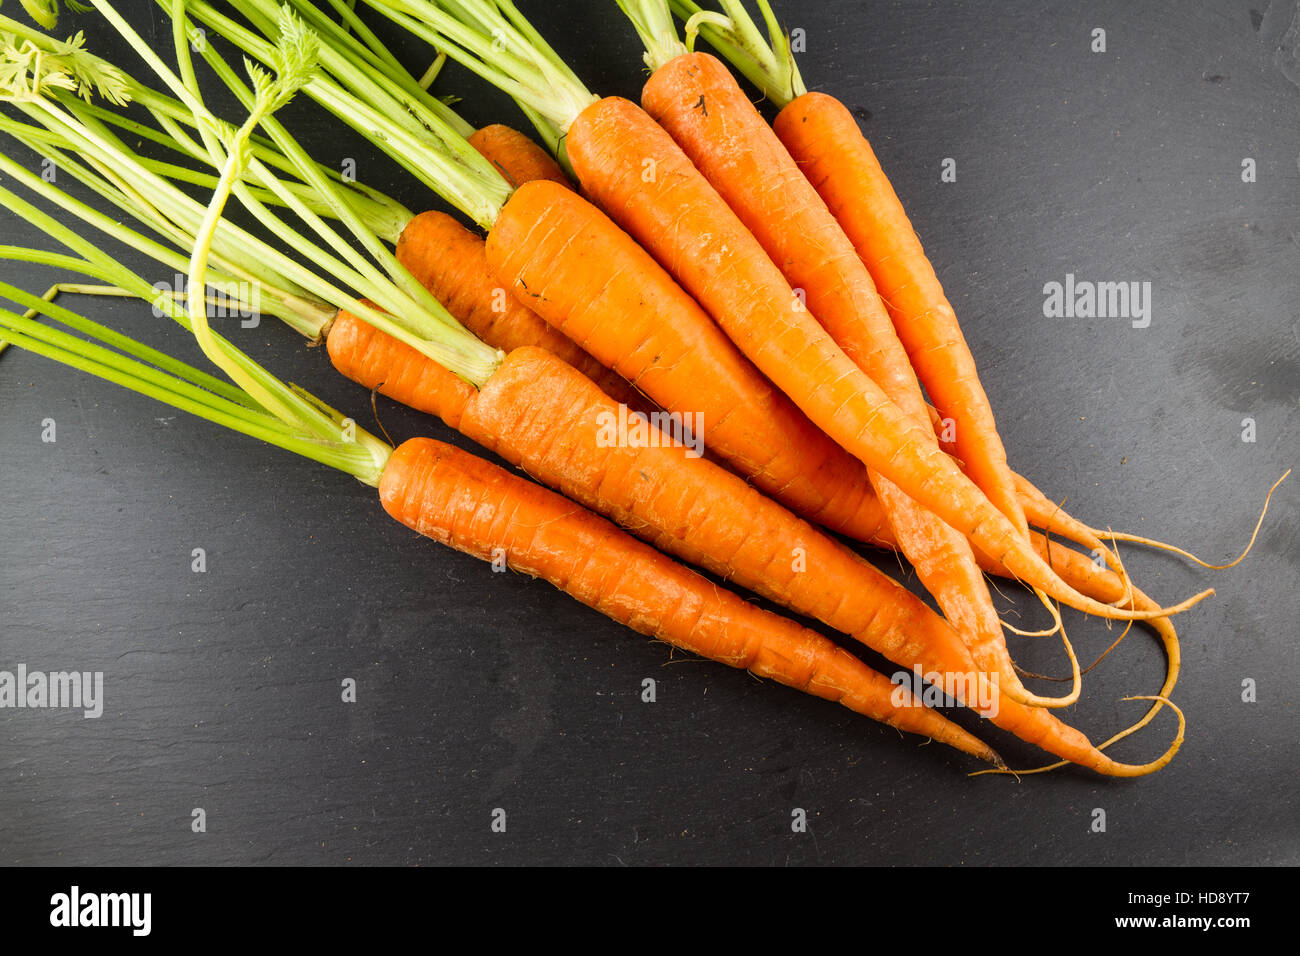 Karotten oder Daucus Carota Haufen mit Blättern auf einem dunklen Schiefer Hintergrund. Stockfoto